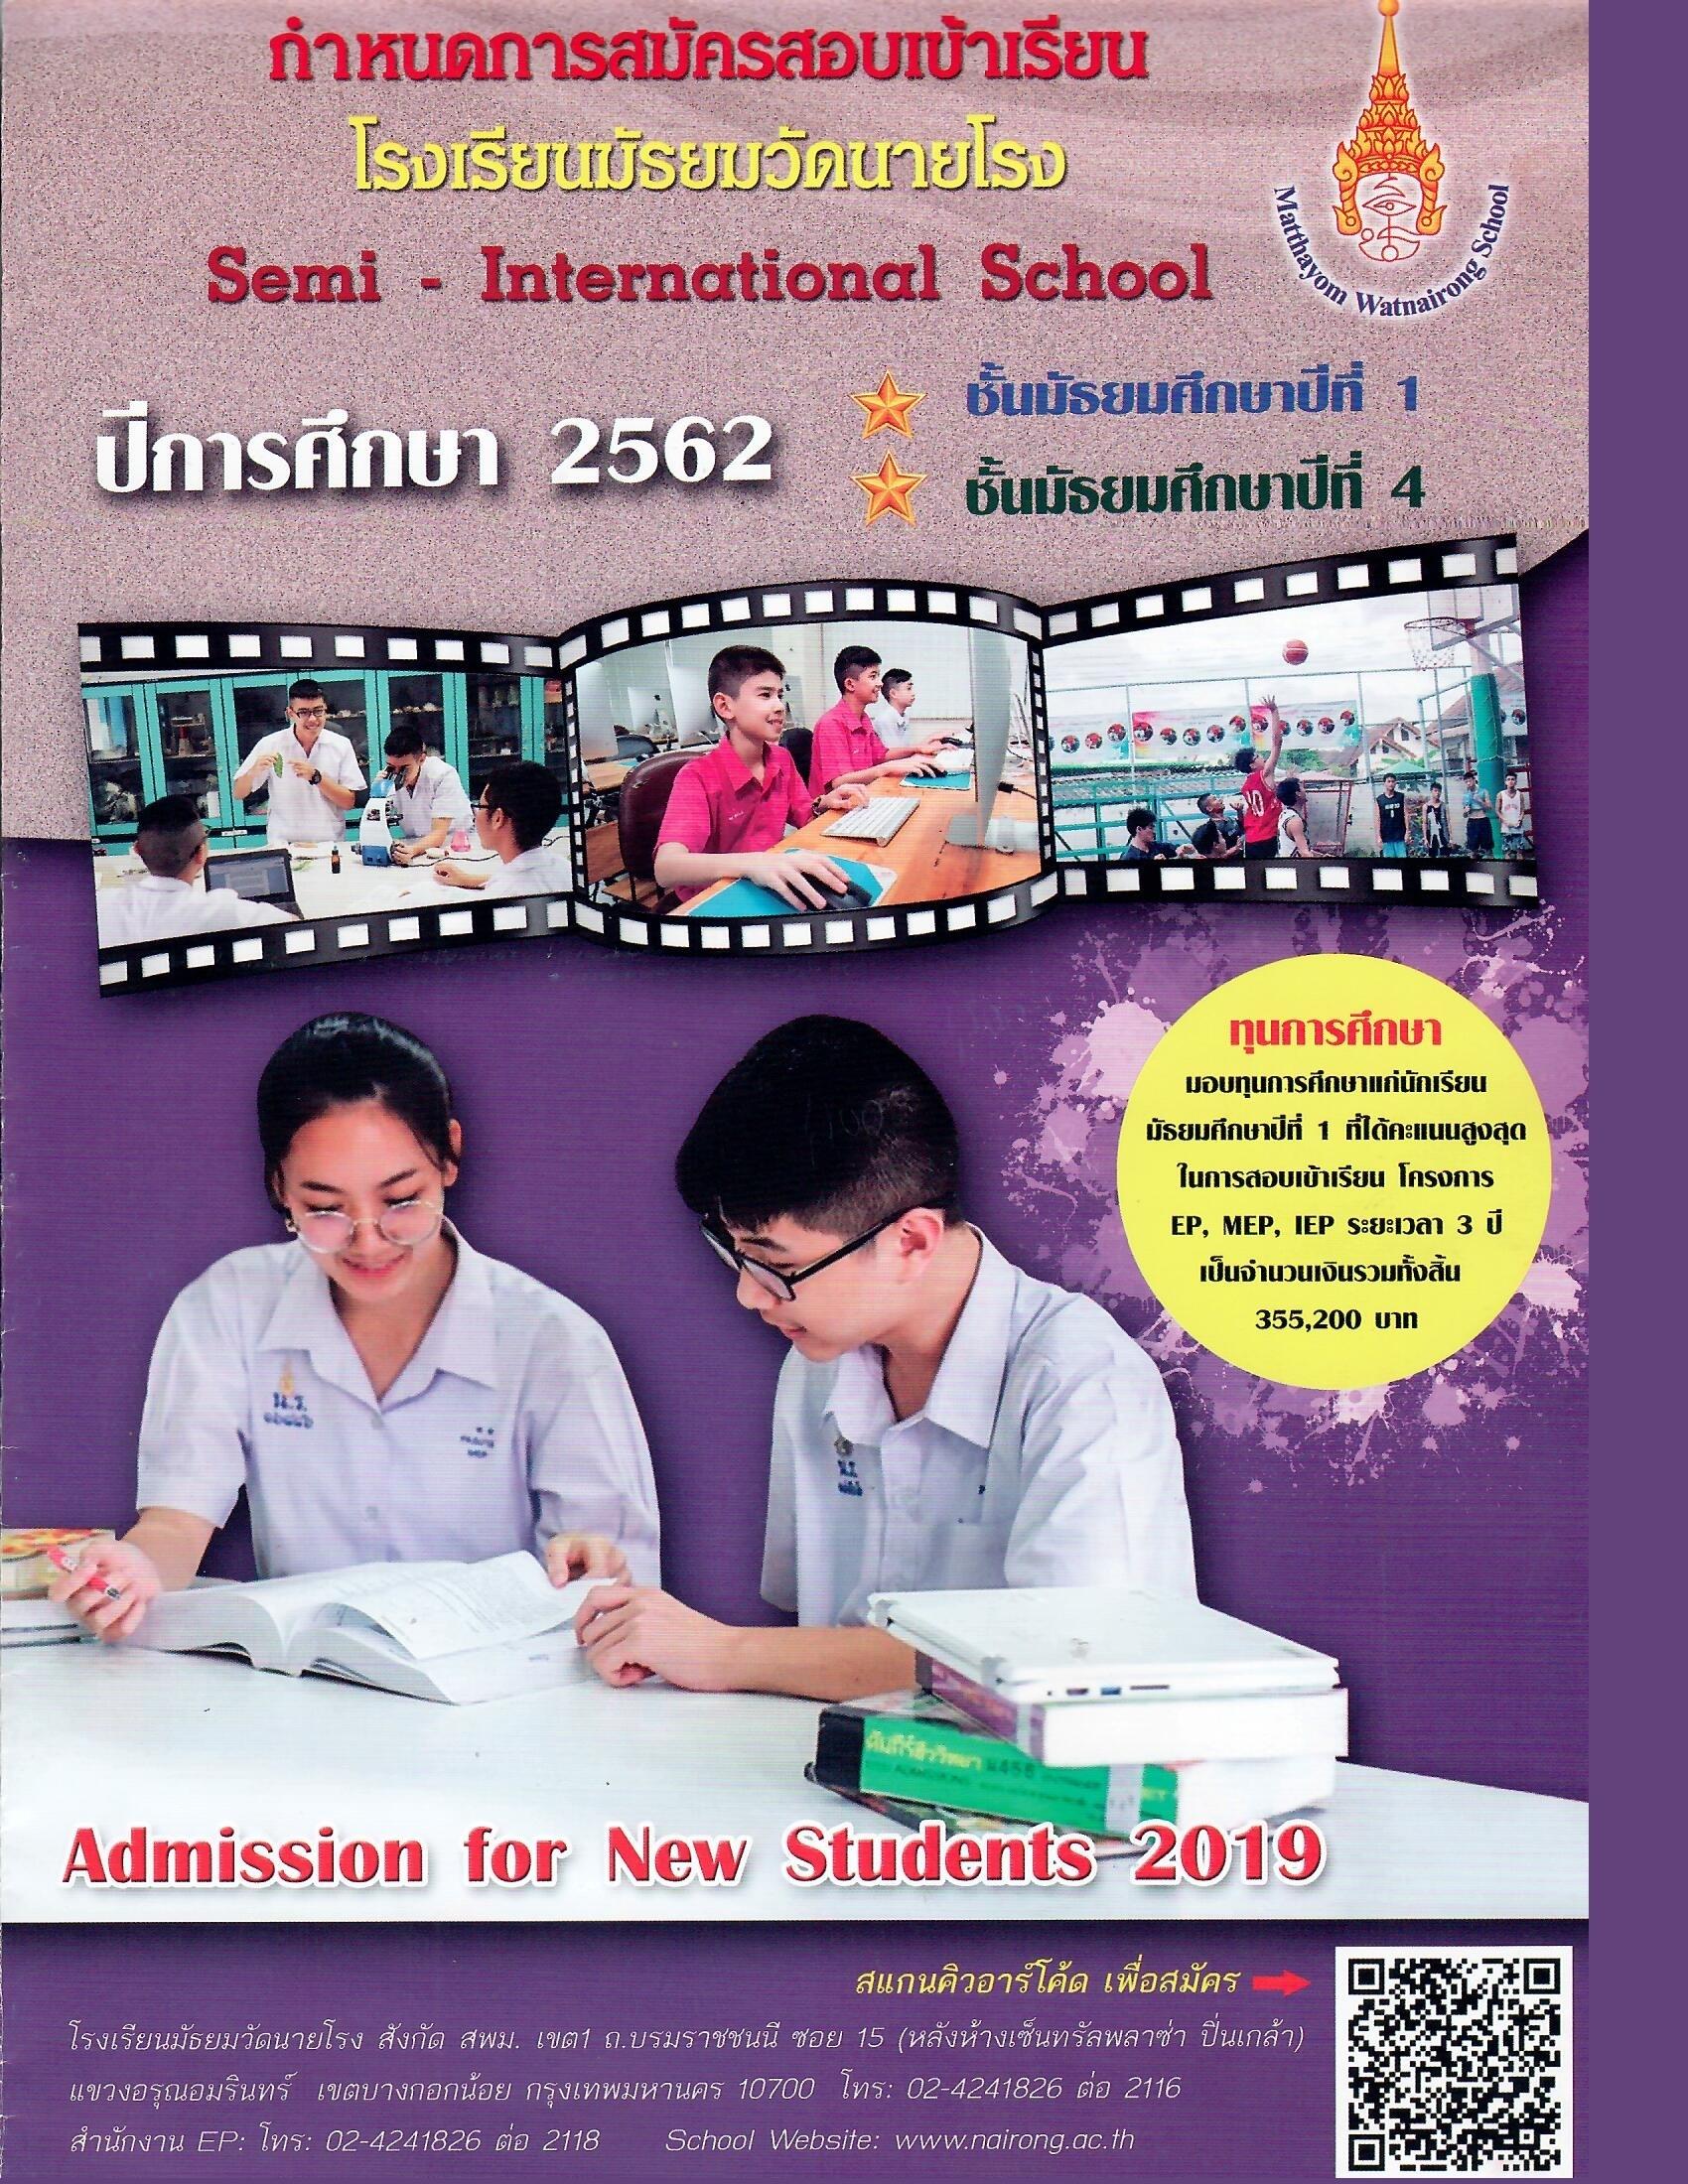 ประกาศรายชื่อนักเรียนที่มีสิทธิ์สอบคัดเลือกเข้าเรียนชั้นมัธยมศึกษาปีที่4 ห้องเรียนพิเศษ(English Program, Mini English Program) ปีการศึกษา 2562 และตารางสอบ